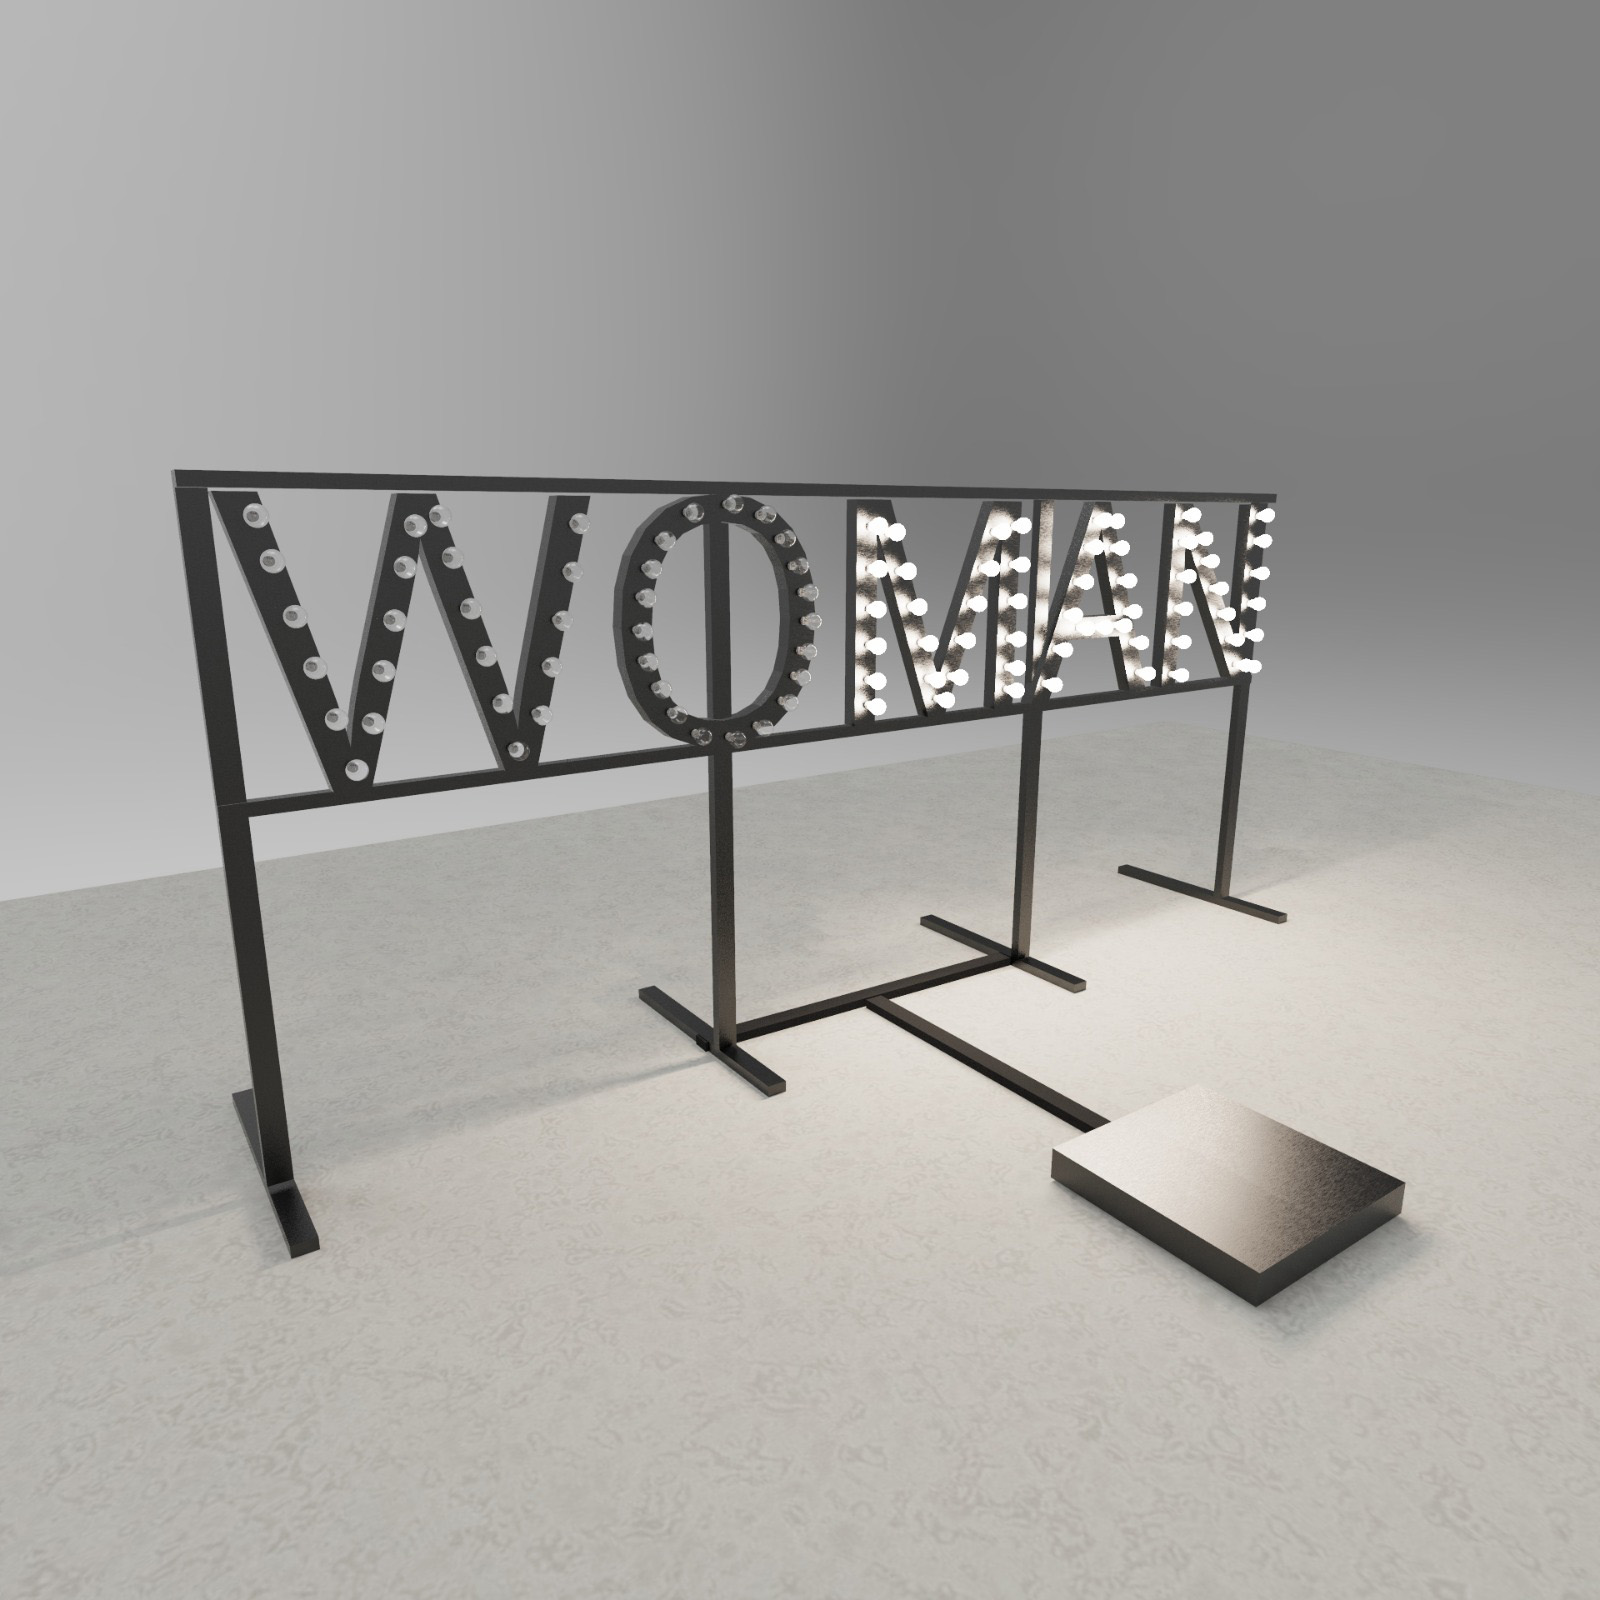 Martina Di Fenza, Wo-man, 2021, ferro, vetro, led, apparati elettronici, 300x180 cm_installation view 1